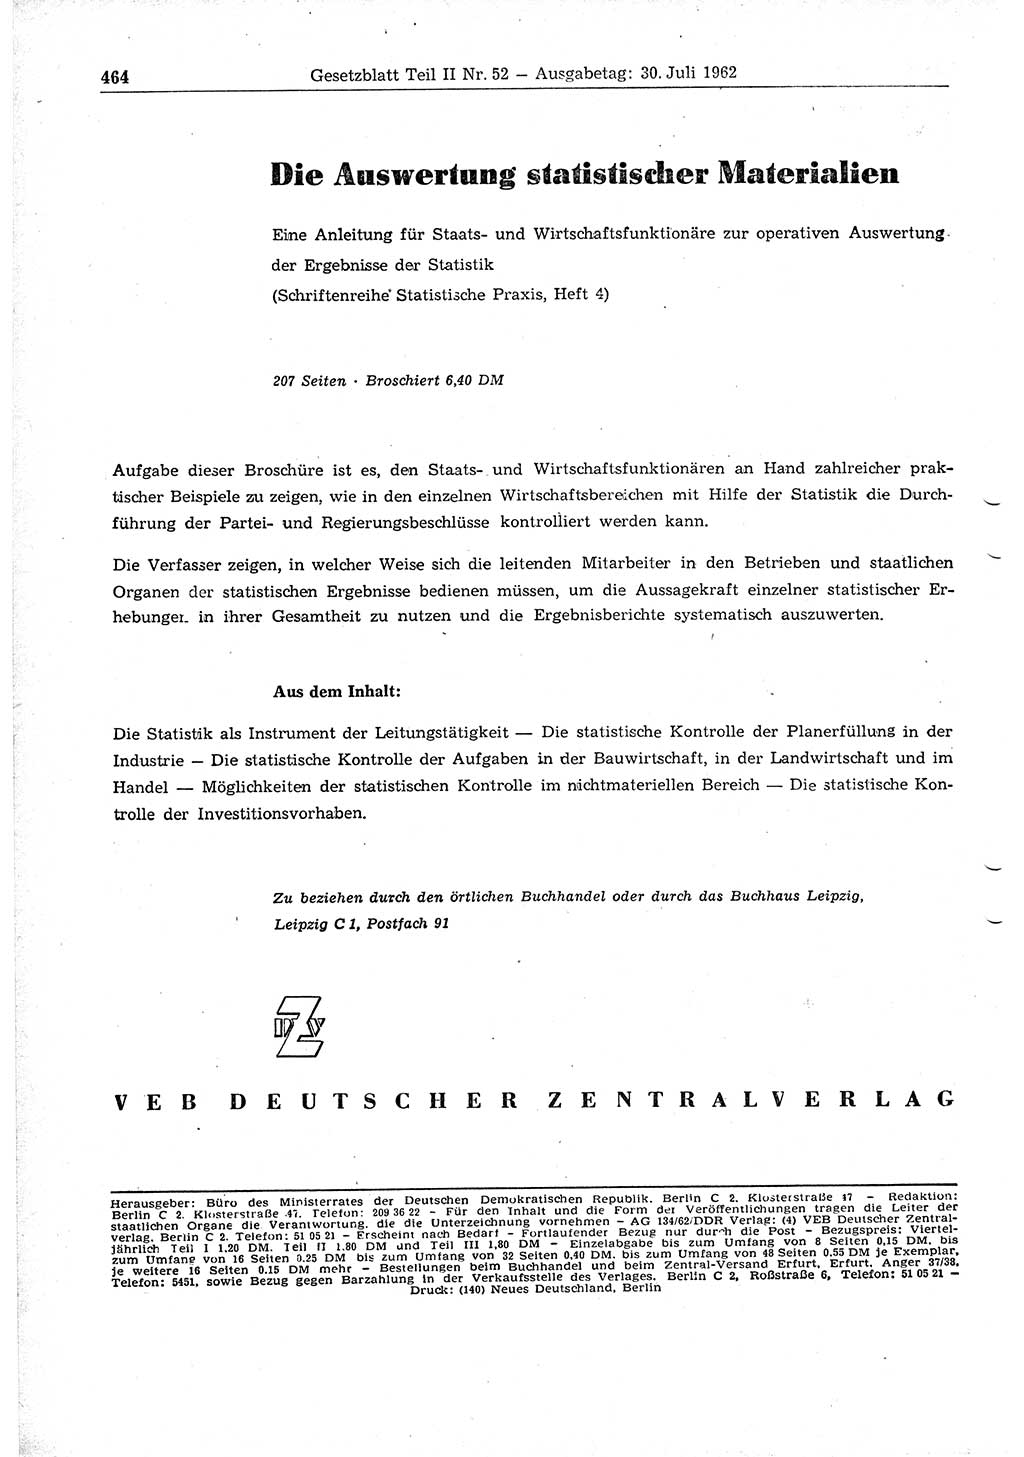 Gesetzblatt (GBl.) der Deutschen Demokratischen Republik (DDR) Teil ⅠⅠ 1962, Seite 464 (GBl. DDR ⅠⅠ 1962, S. 464)